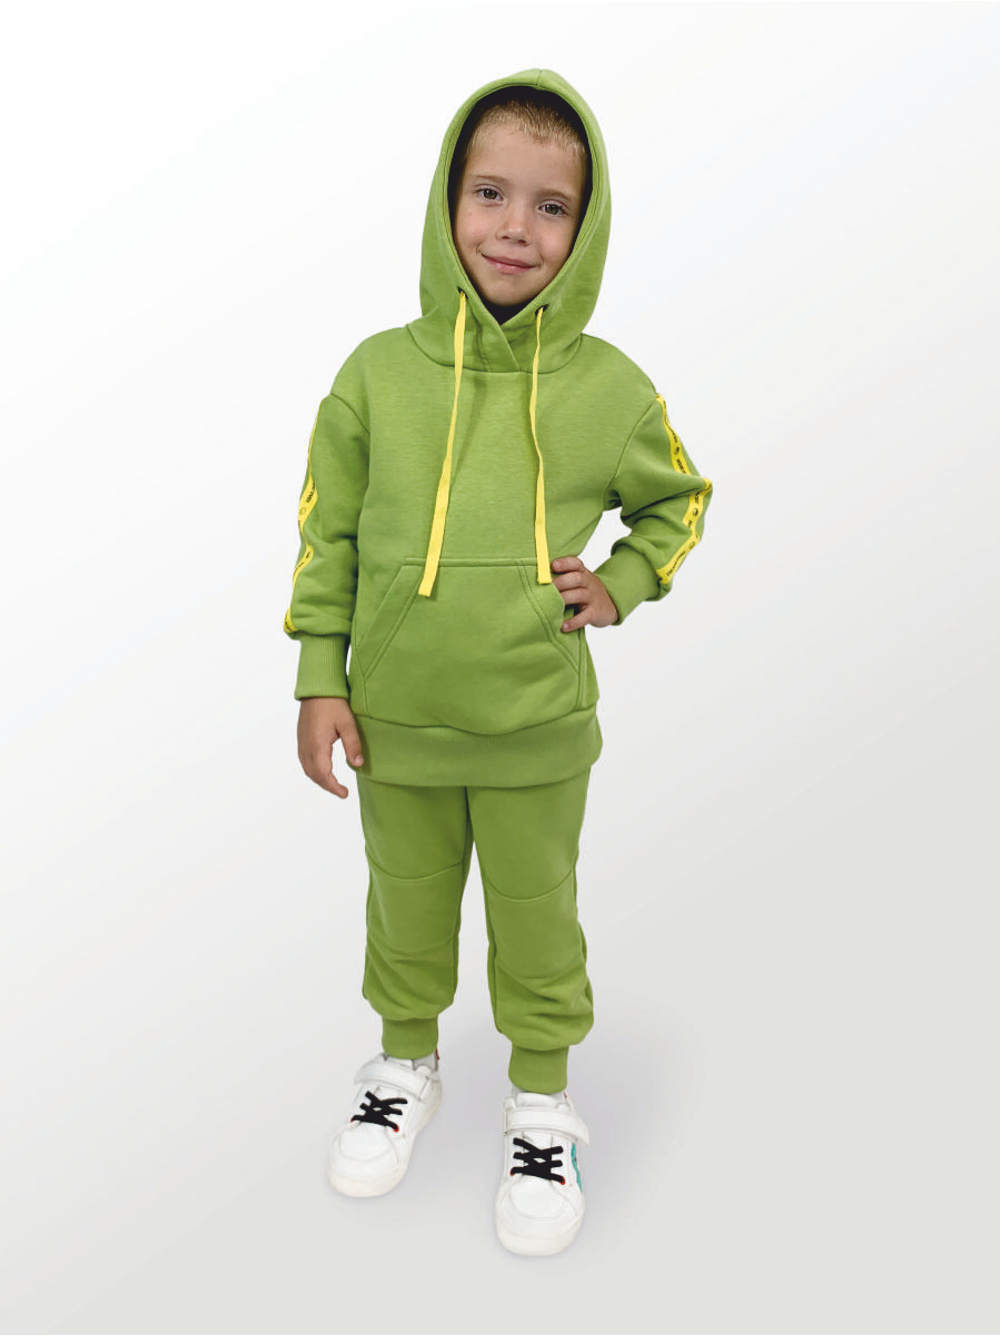 Брюки для детей, модель №2 (джоггеры), рост 110 см, зеленые